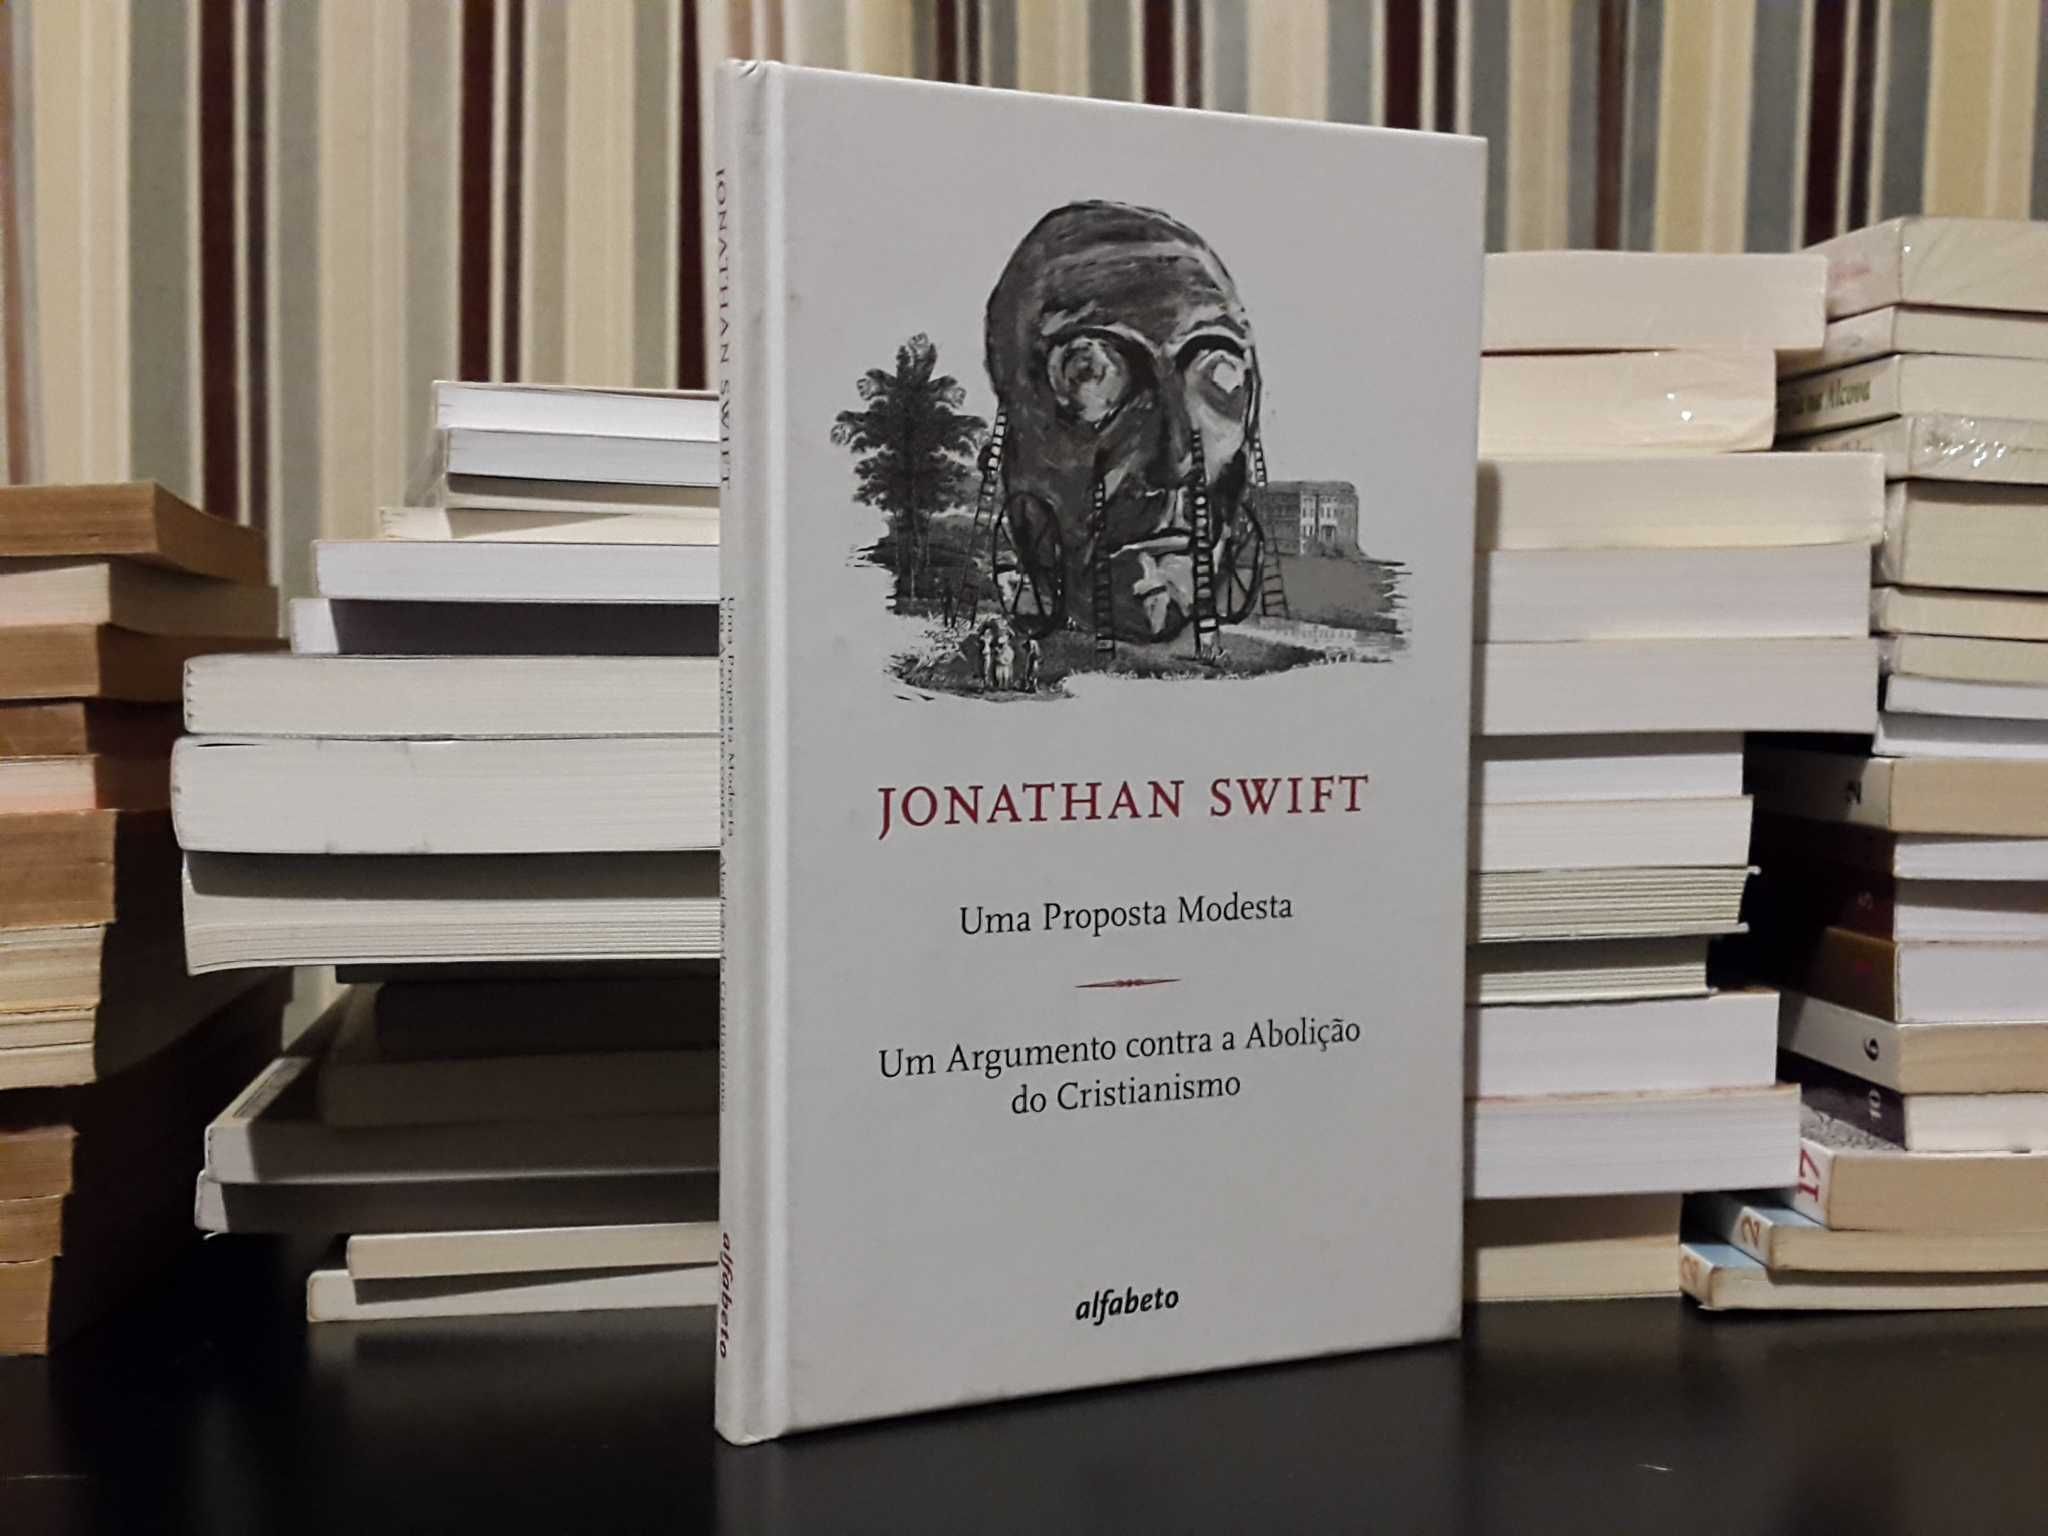 Jonathan Swift - Uma Proposta Modesta / Um Argumento contra a Abolição